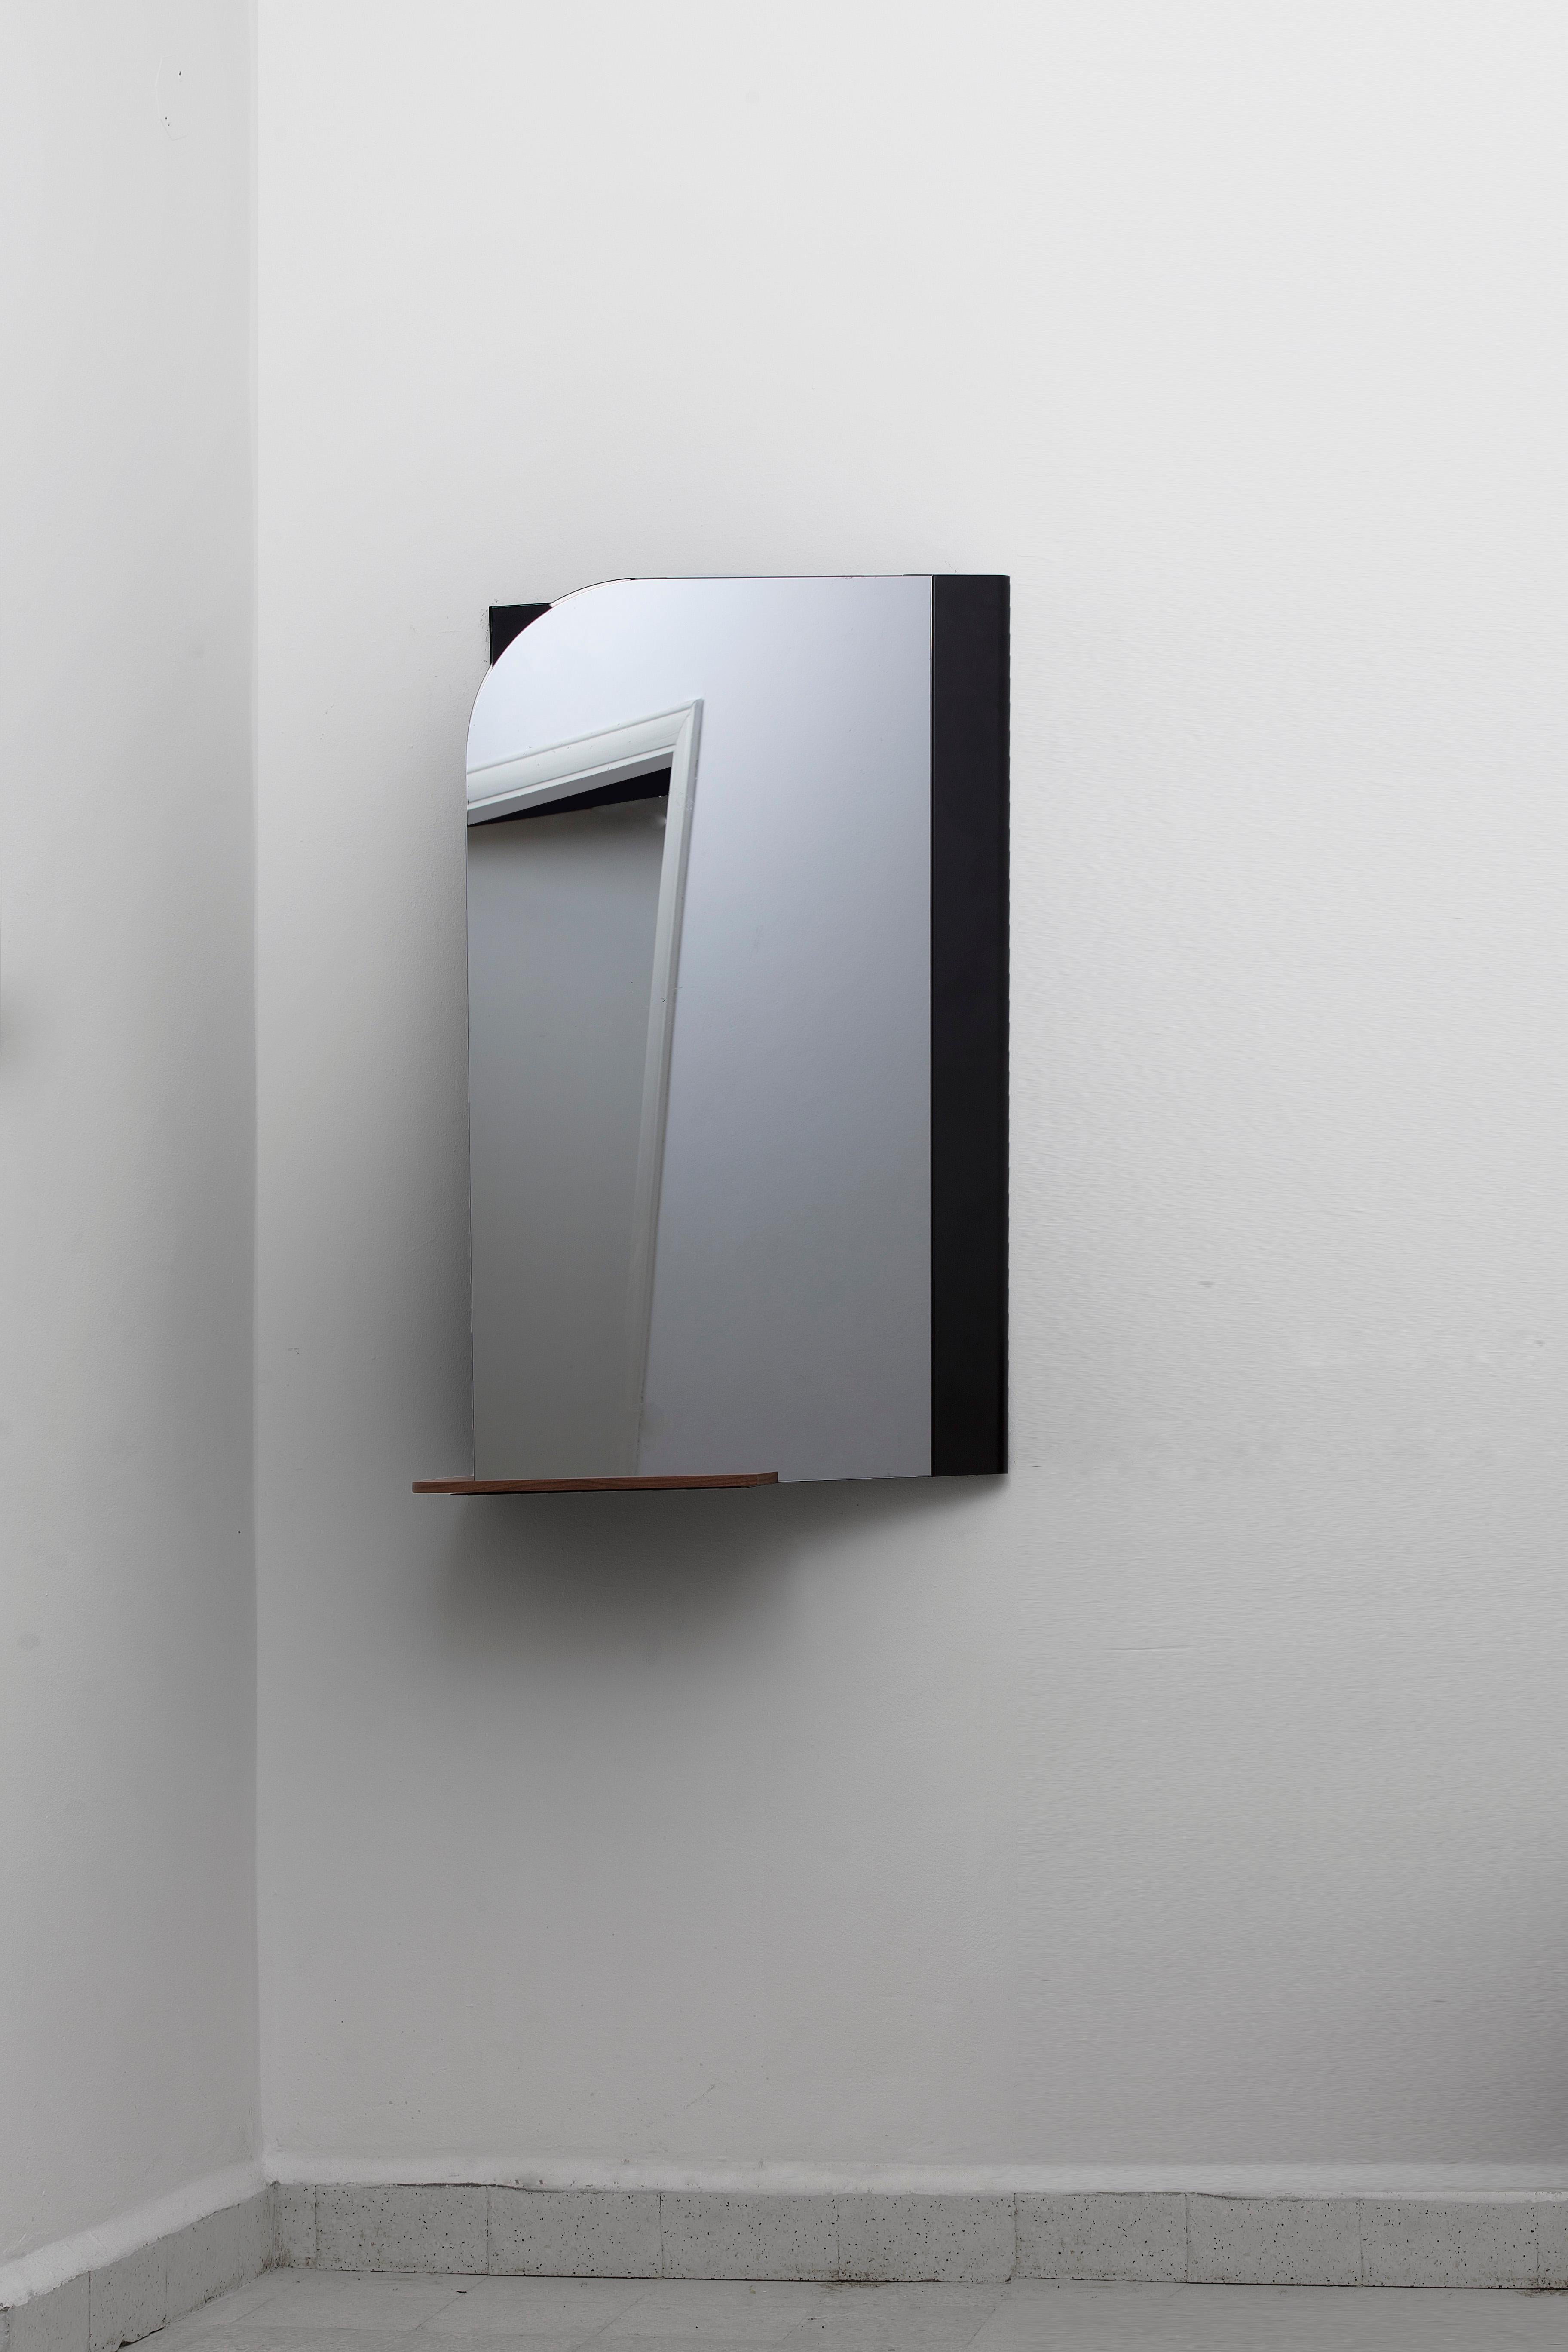 Miroir moyen pivotant par Borgi Bastormagi
Dimensions : 25 x 60 x 100 cm : 25 x 60 x 100 cm
Matériau : acier, miroir, bois de noyer

Pivot -M- est une variante du miroir pleine hauteur, conçue pour revisiter la console conventionnelle.

Fixé